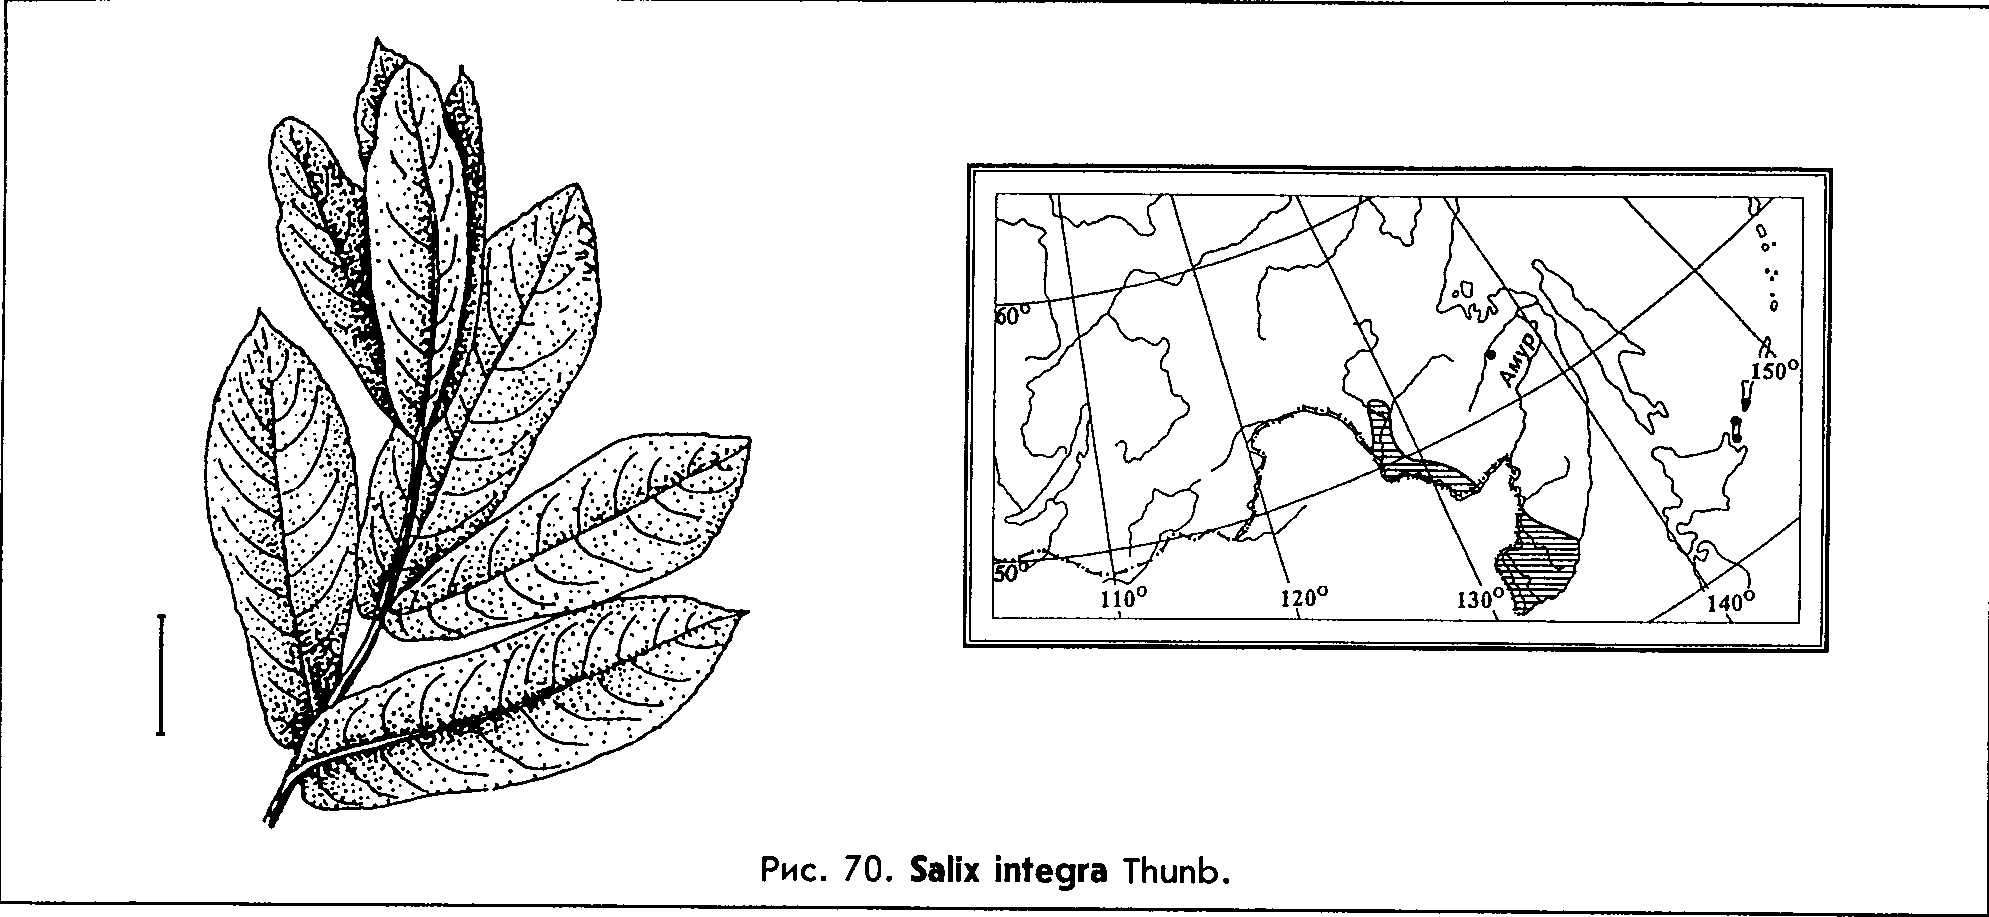 Salix integra Thunb. — Ива цельнолистная (Д) Salix-18